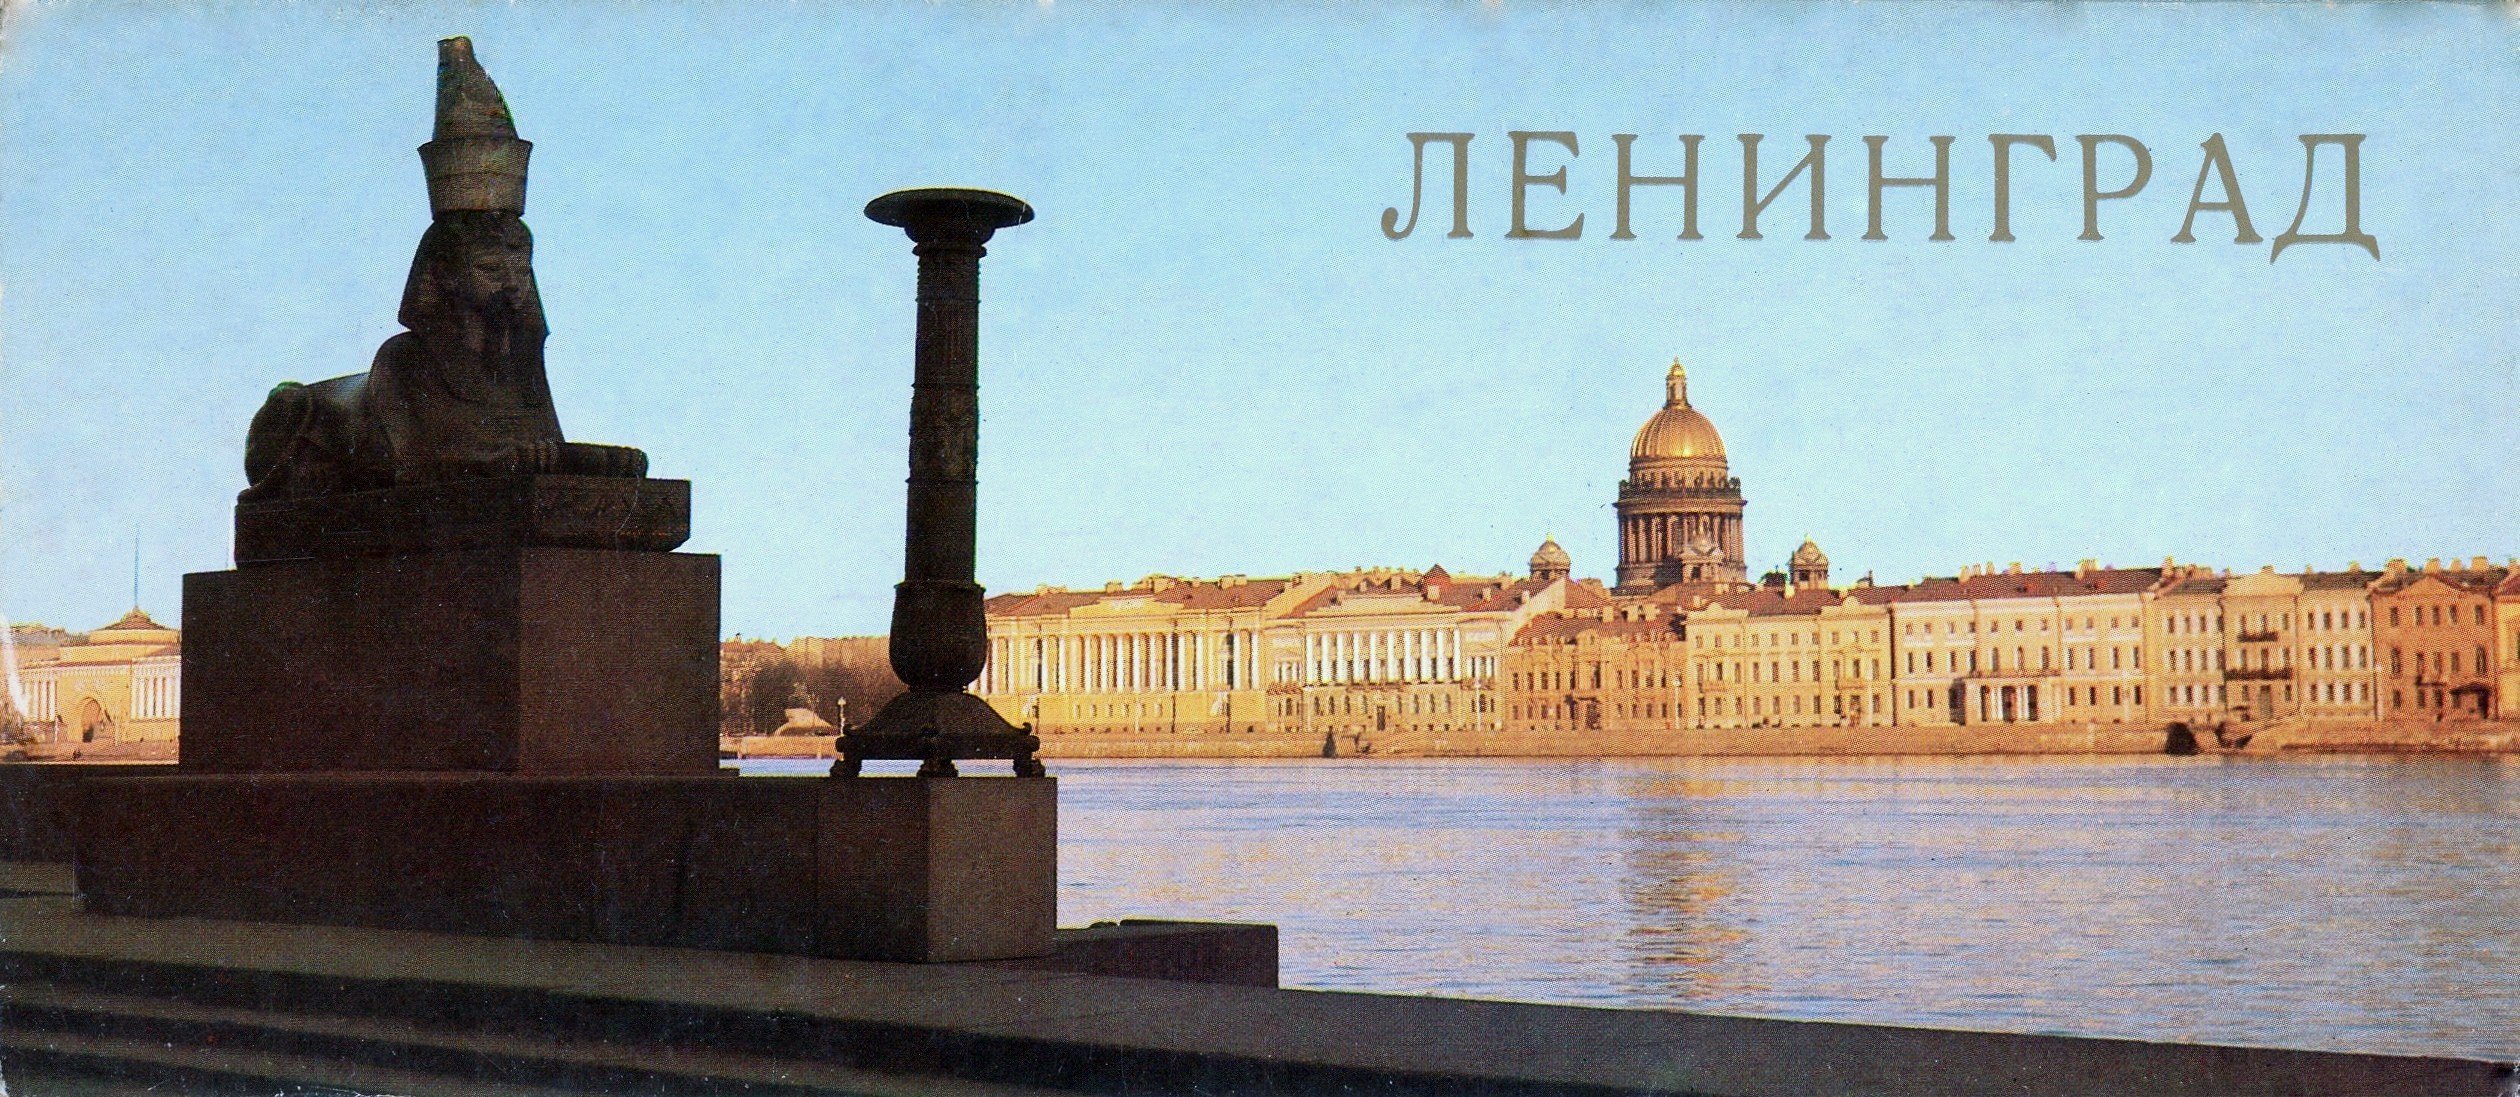 ТЕСТ: сможешь вспомнить старые названия городов Советского Союза?